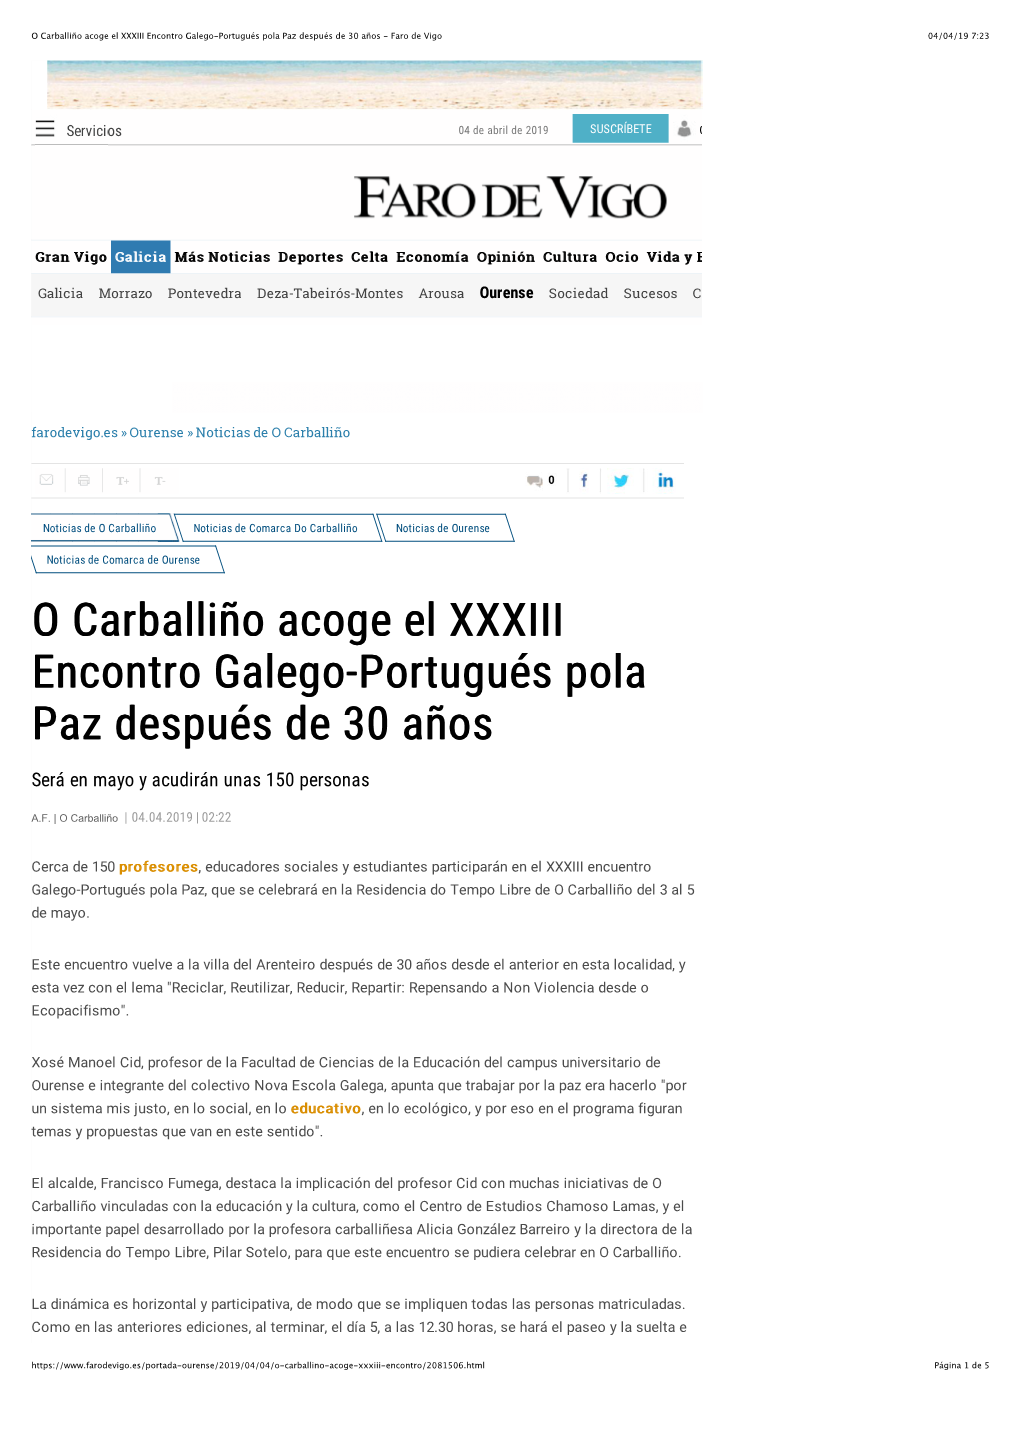 O Carballiño Acoge El XXXIII Encontro Galego-Portugués Pola Paz Después De 30 Años - Faro De Vigo 04/04/19 7:23